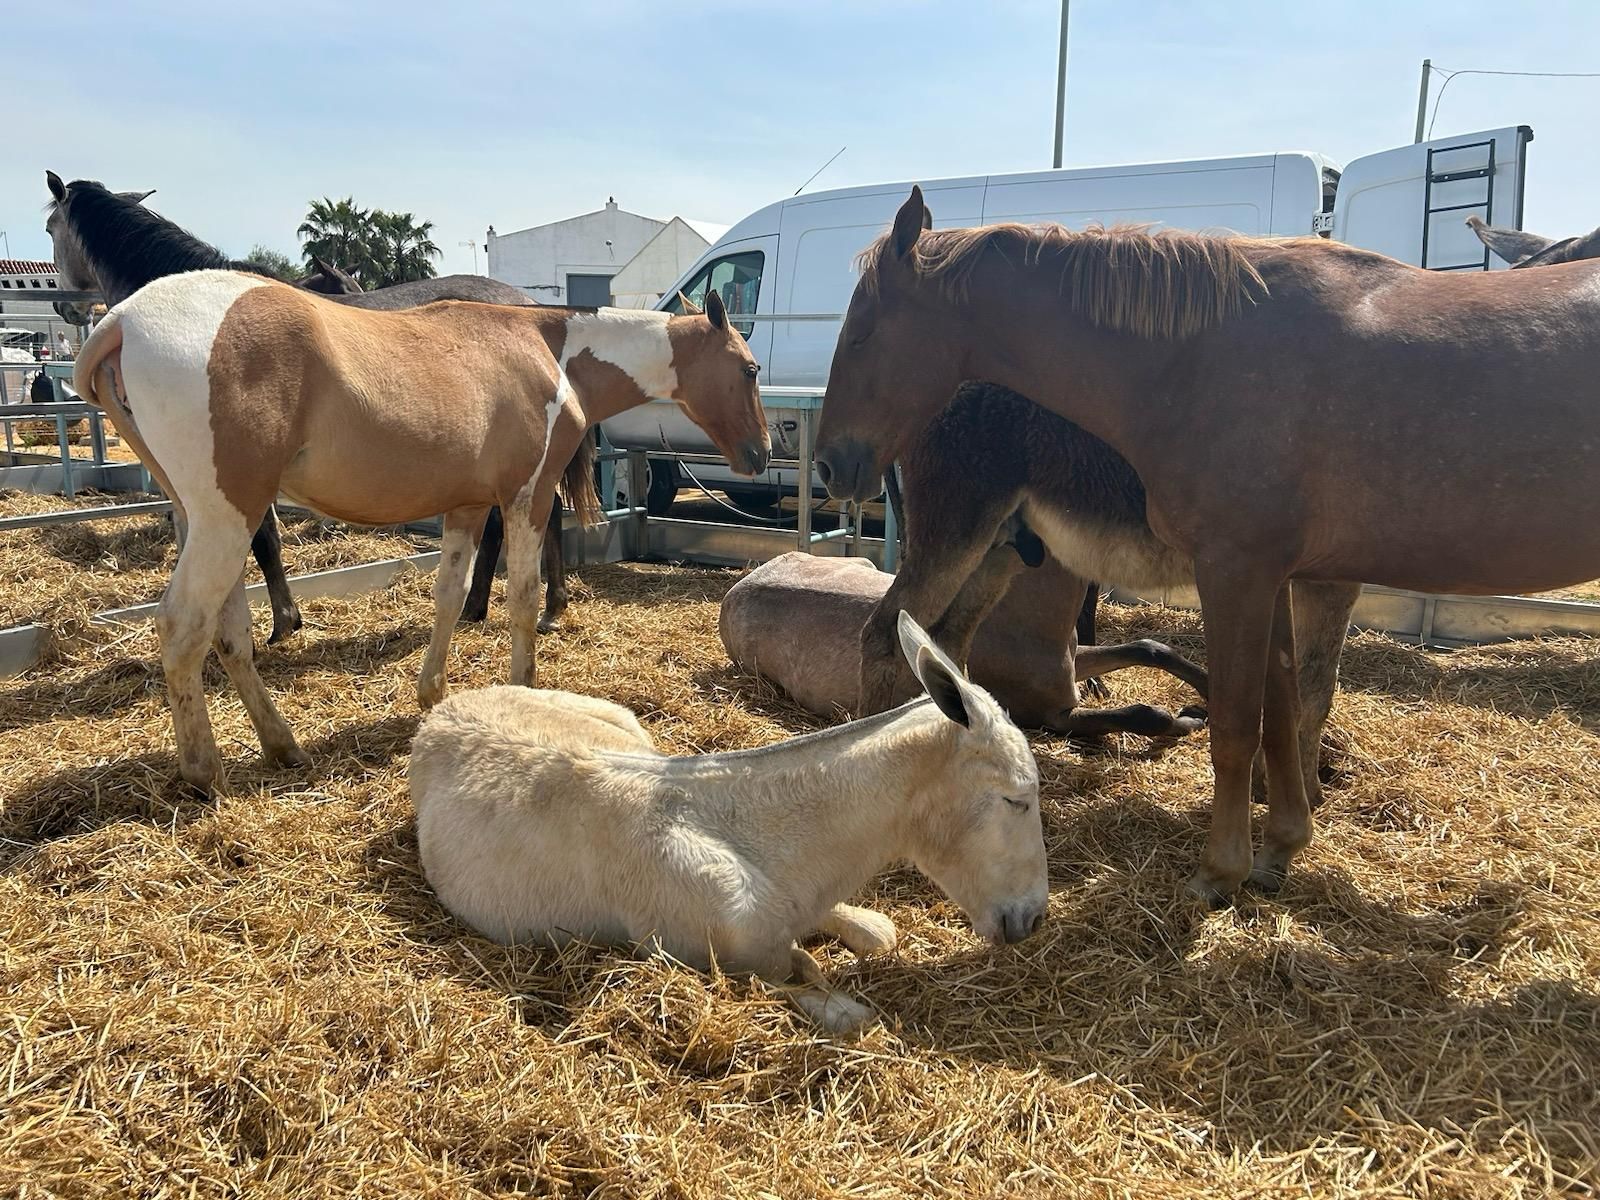 Caballos, mulos y burros se mezclan en el mercado.jpeg